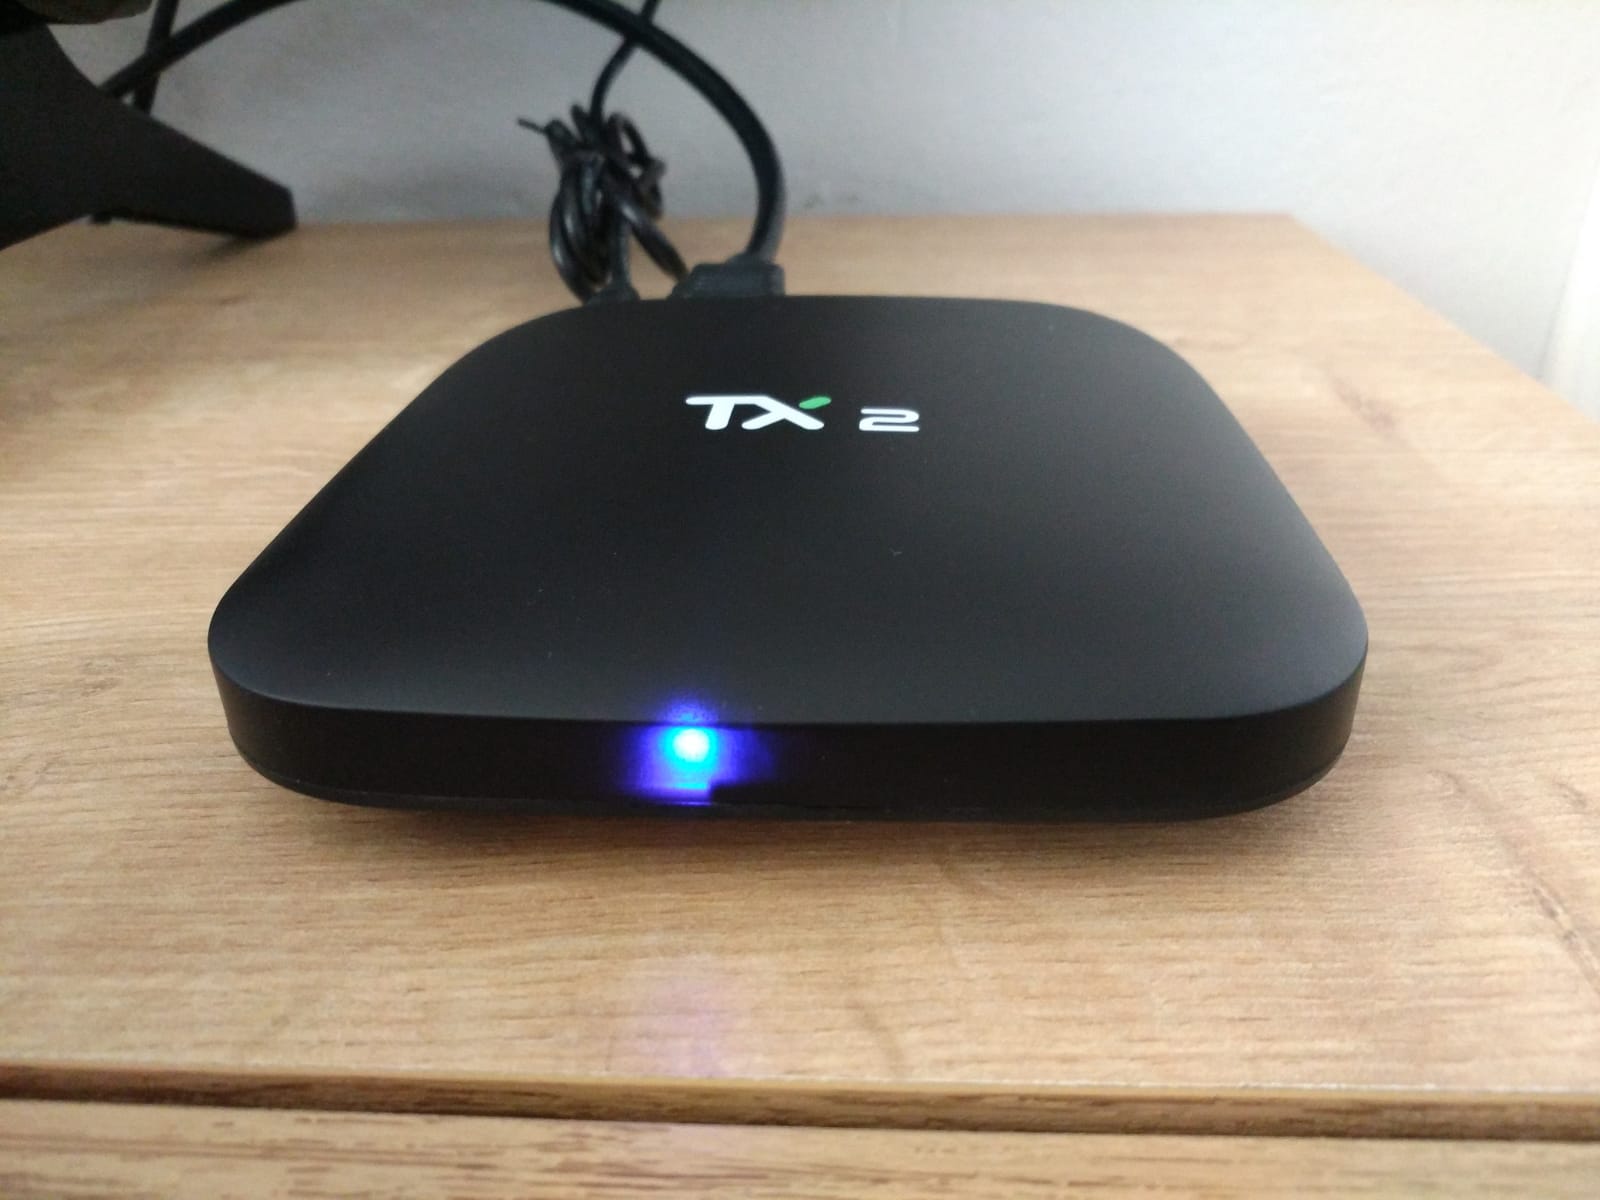 Tanix tx2 TV Box Ürün İncelemesi